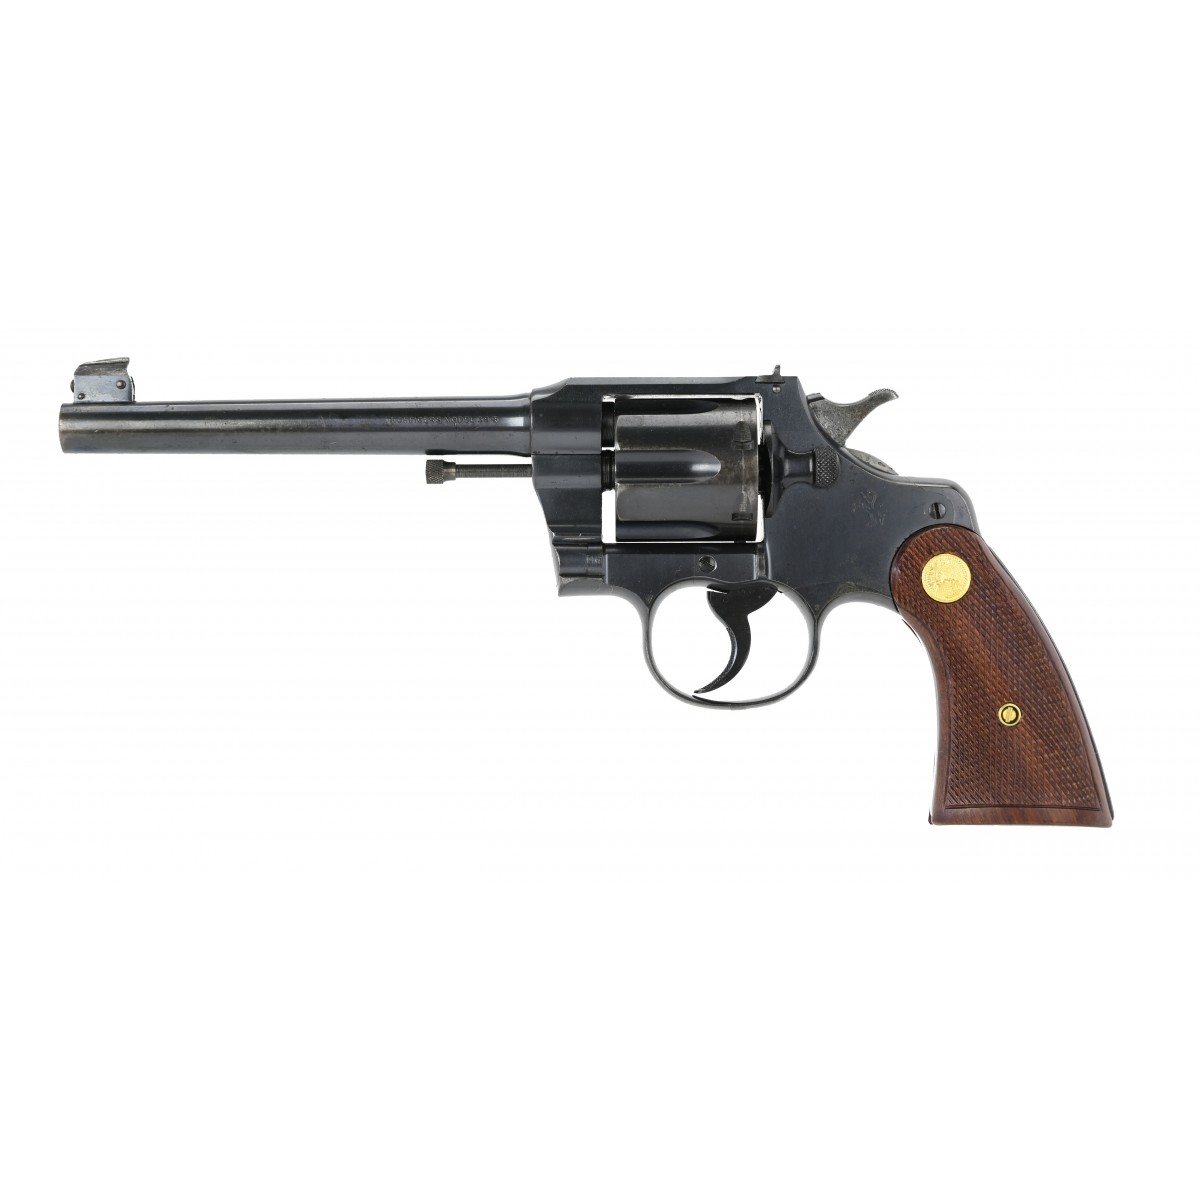 Colt Officers Model .38 Special caliber revolver for sale.